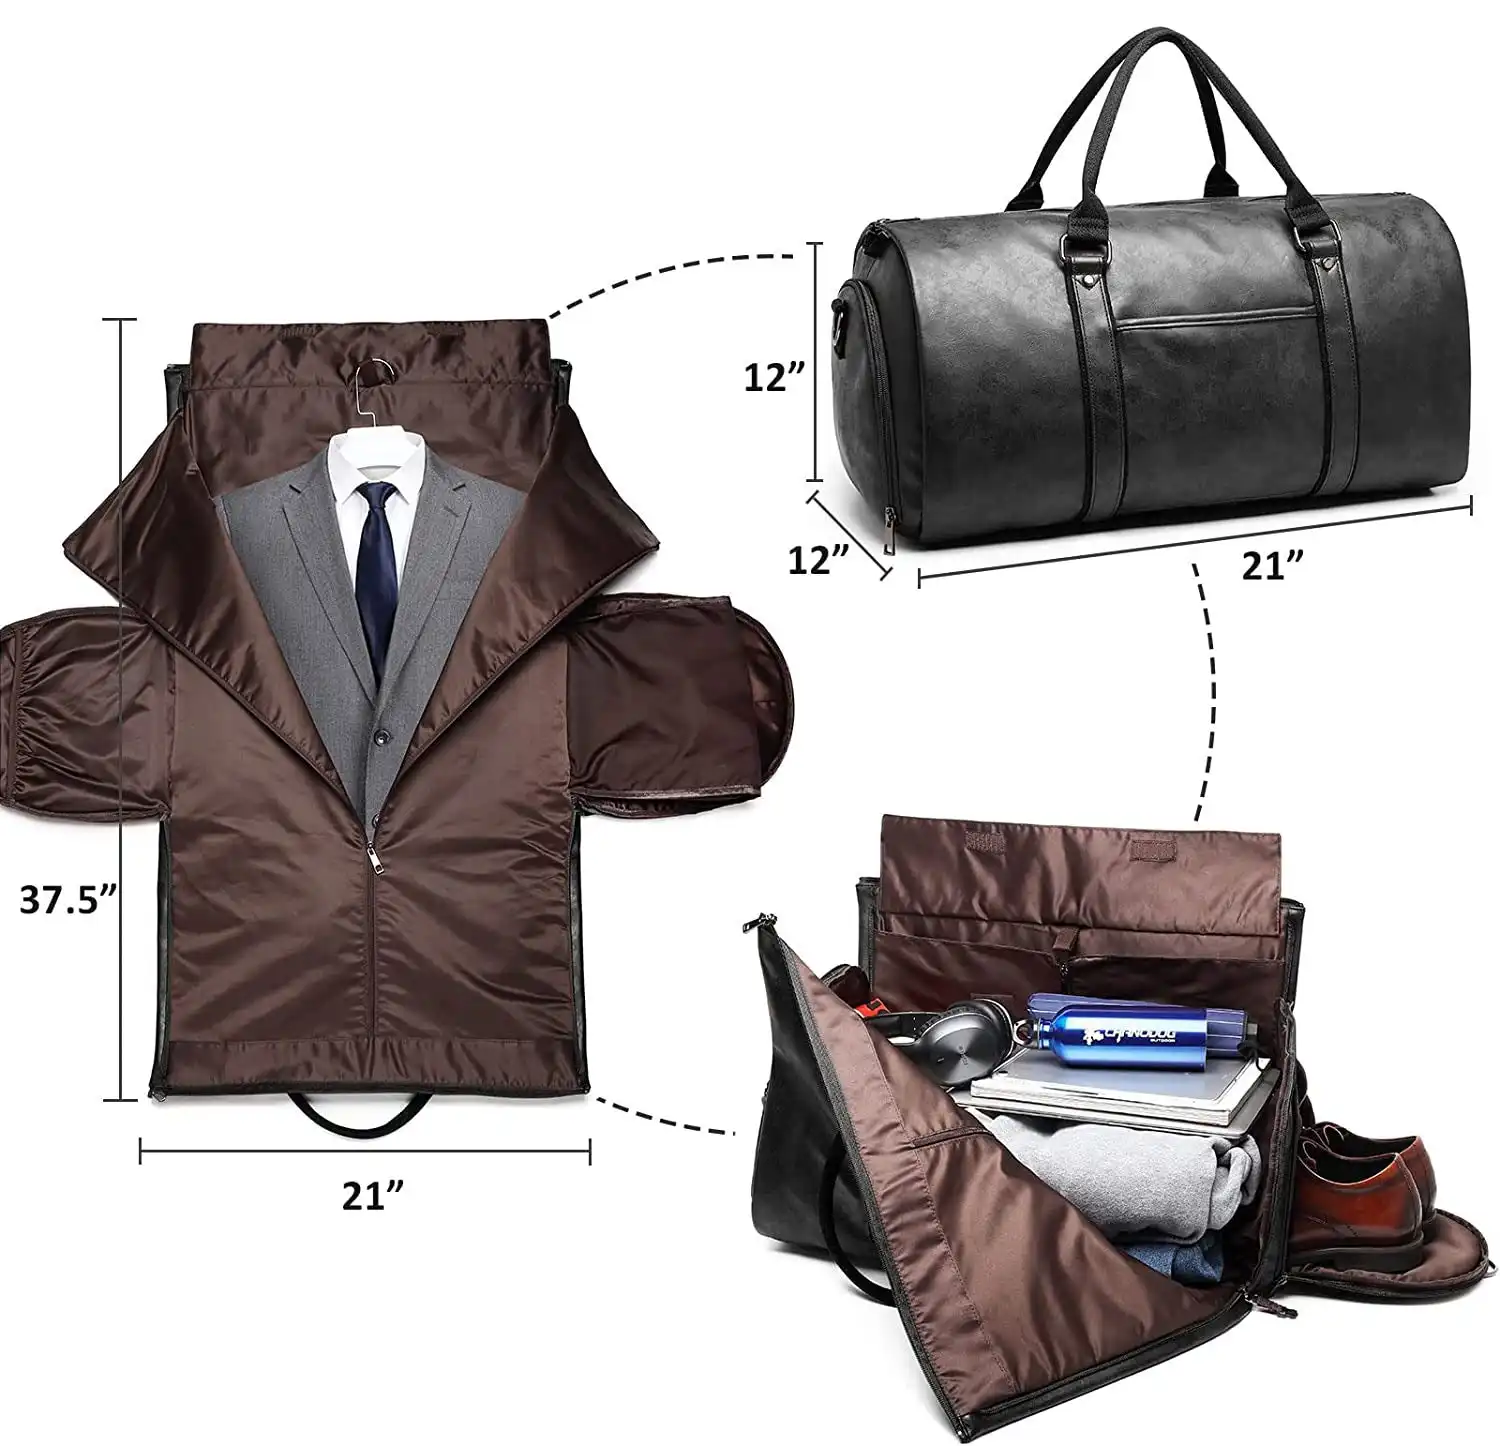 วินเทจสีน้ำตาลสีดำเสื้อผ้ากระเป๋าสำหรับการเดินทางหนัง Duffle กระเป๋าแปลงบุรุษสูทกระเป๋าเดินทางที่มีช่องใส่รองเท้า